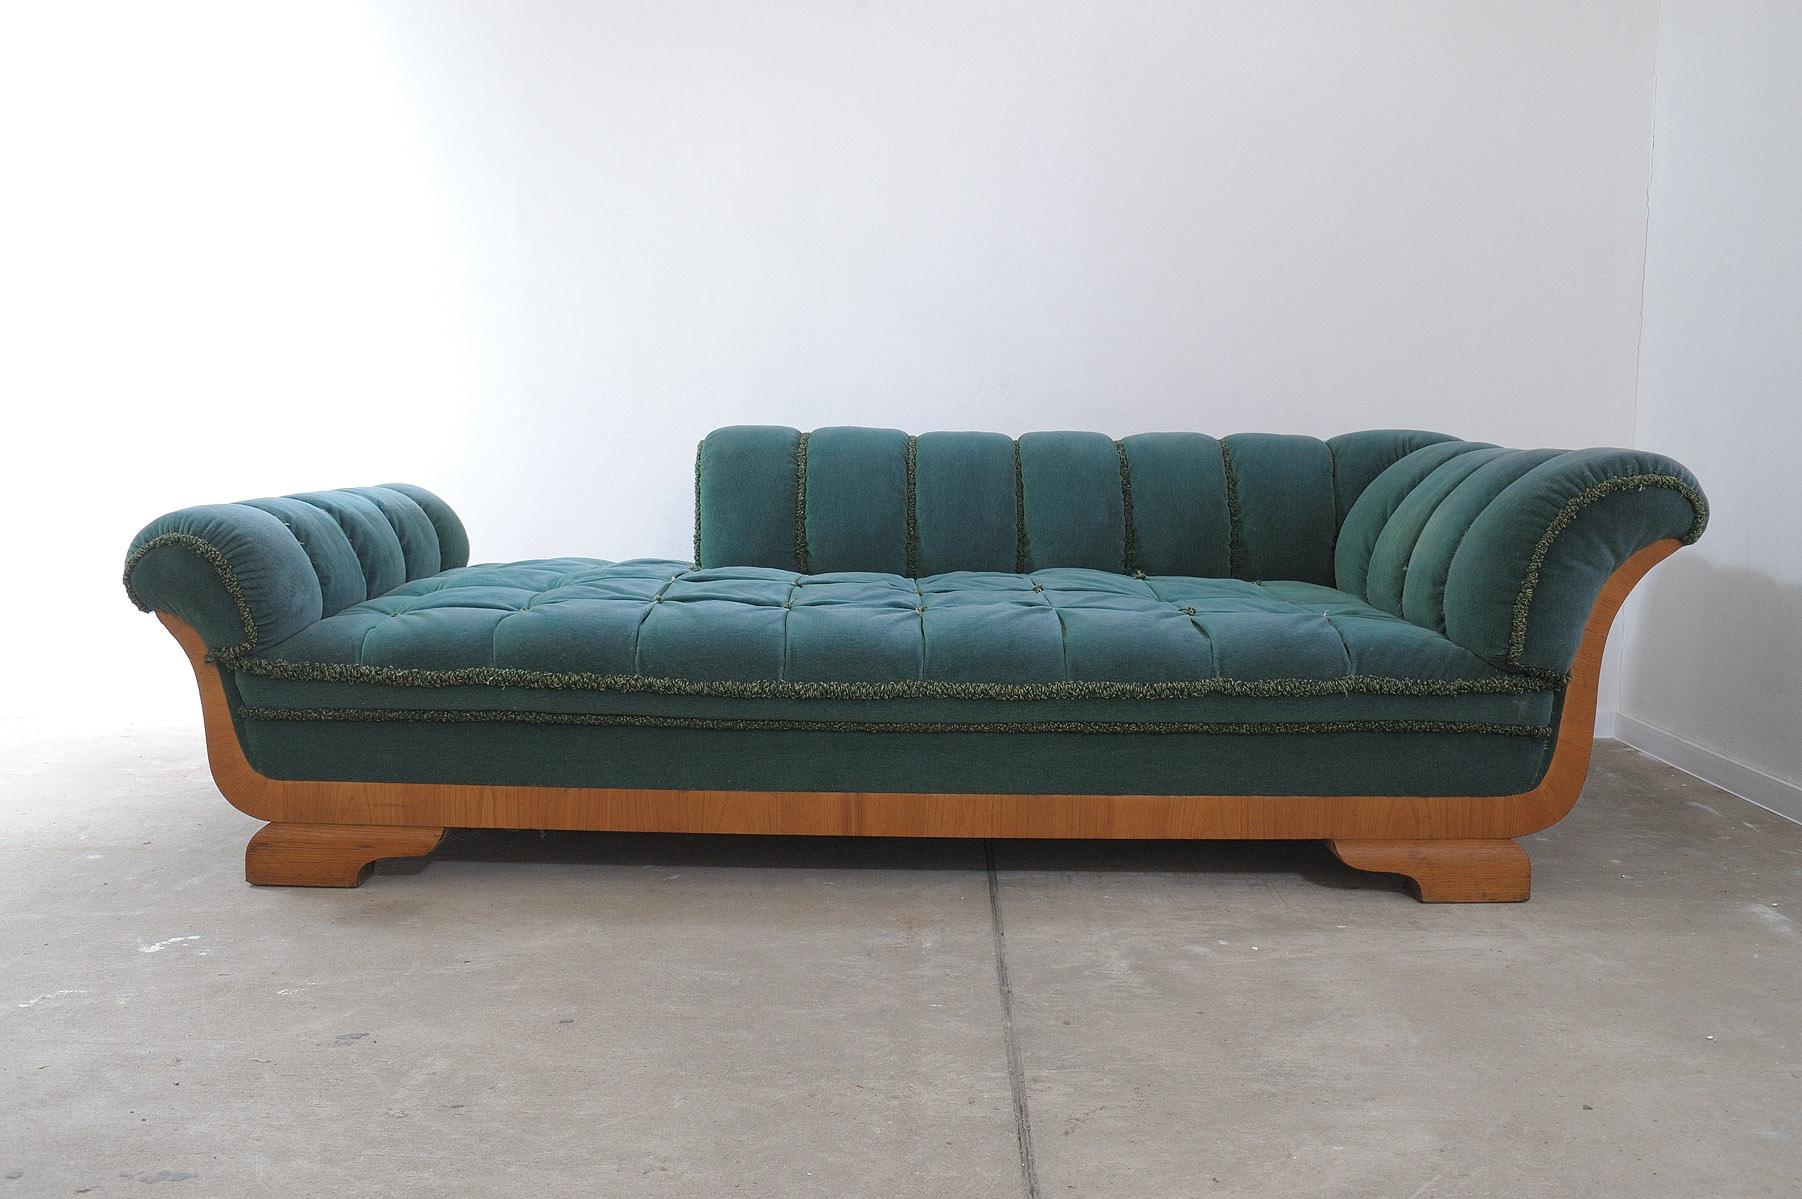 Dieses Tagesbett wurde in den 1950er Jahren in der ehemaligen Tschechoslowakei im Biedermeier-Stil hergestellt. Er hat eine Holzstruktur, die mit Buchenholz furniert und mit einem Stoff bezogen ist.

Sofa ist in gutem baulichen Zustand, zeigt